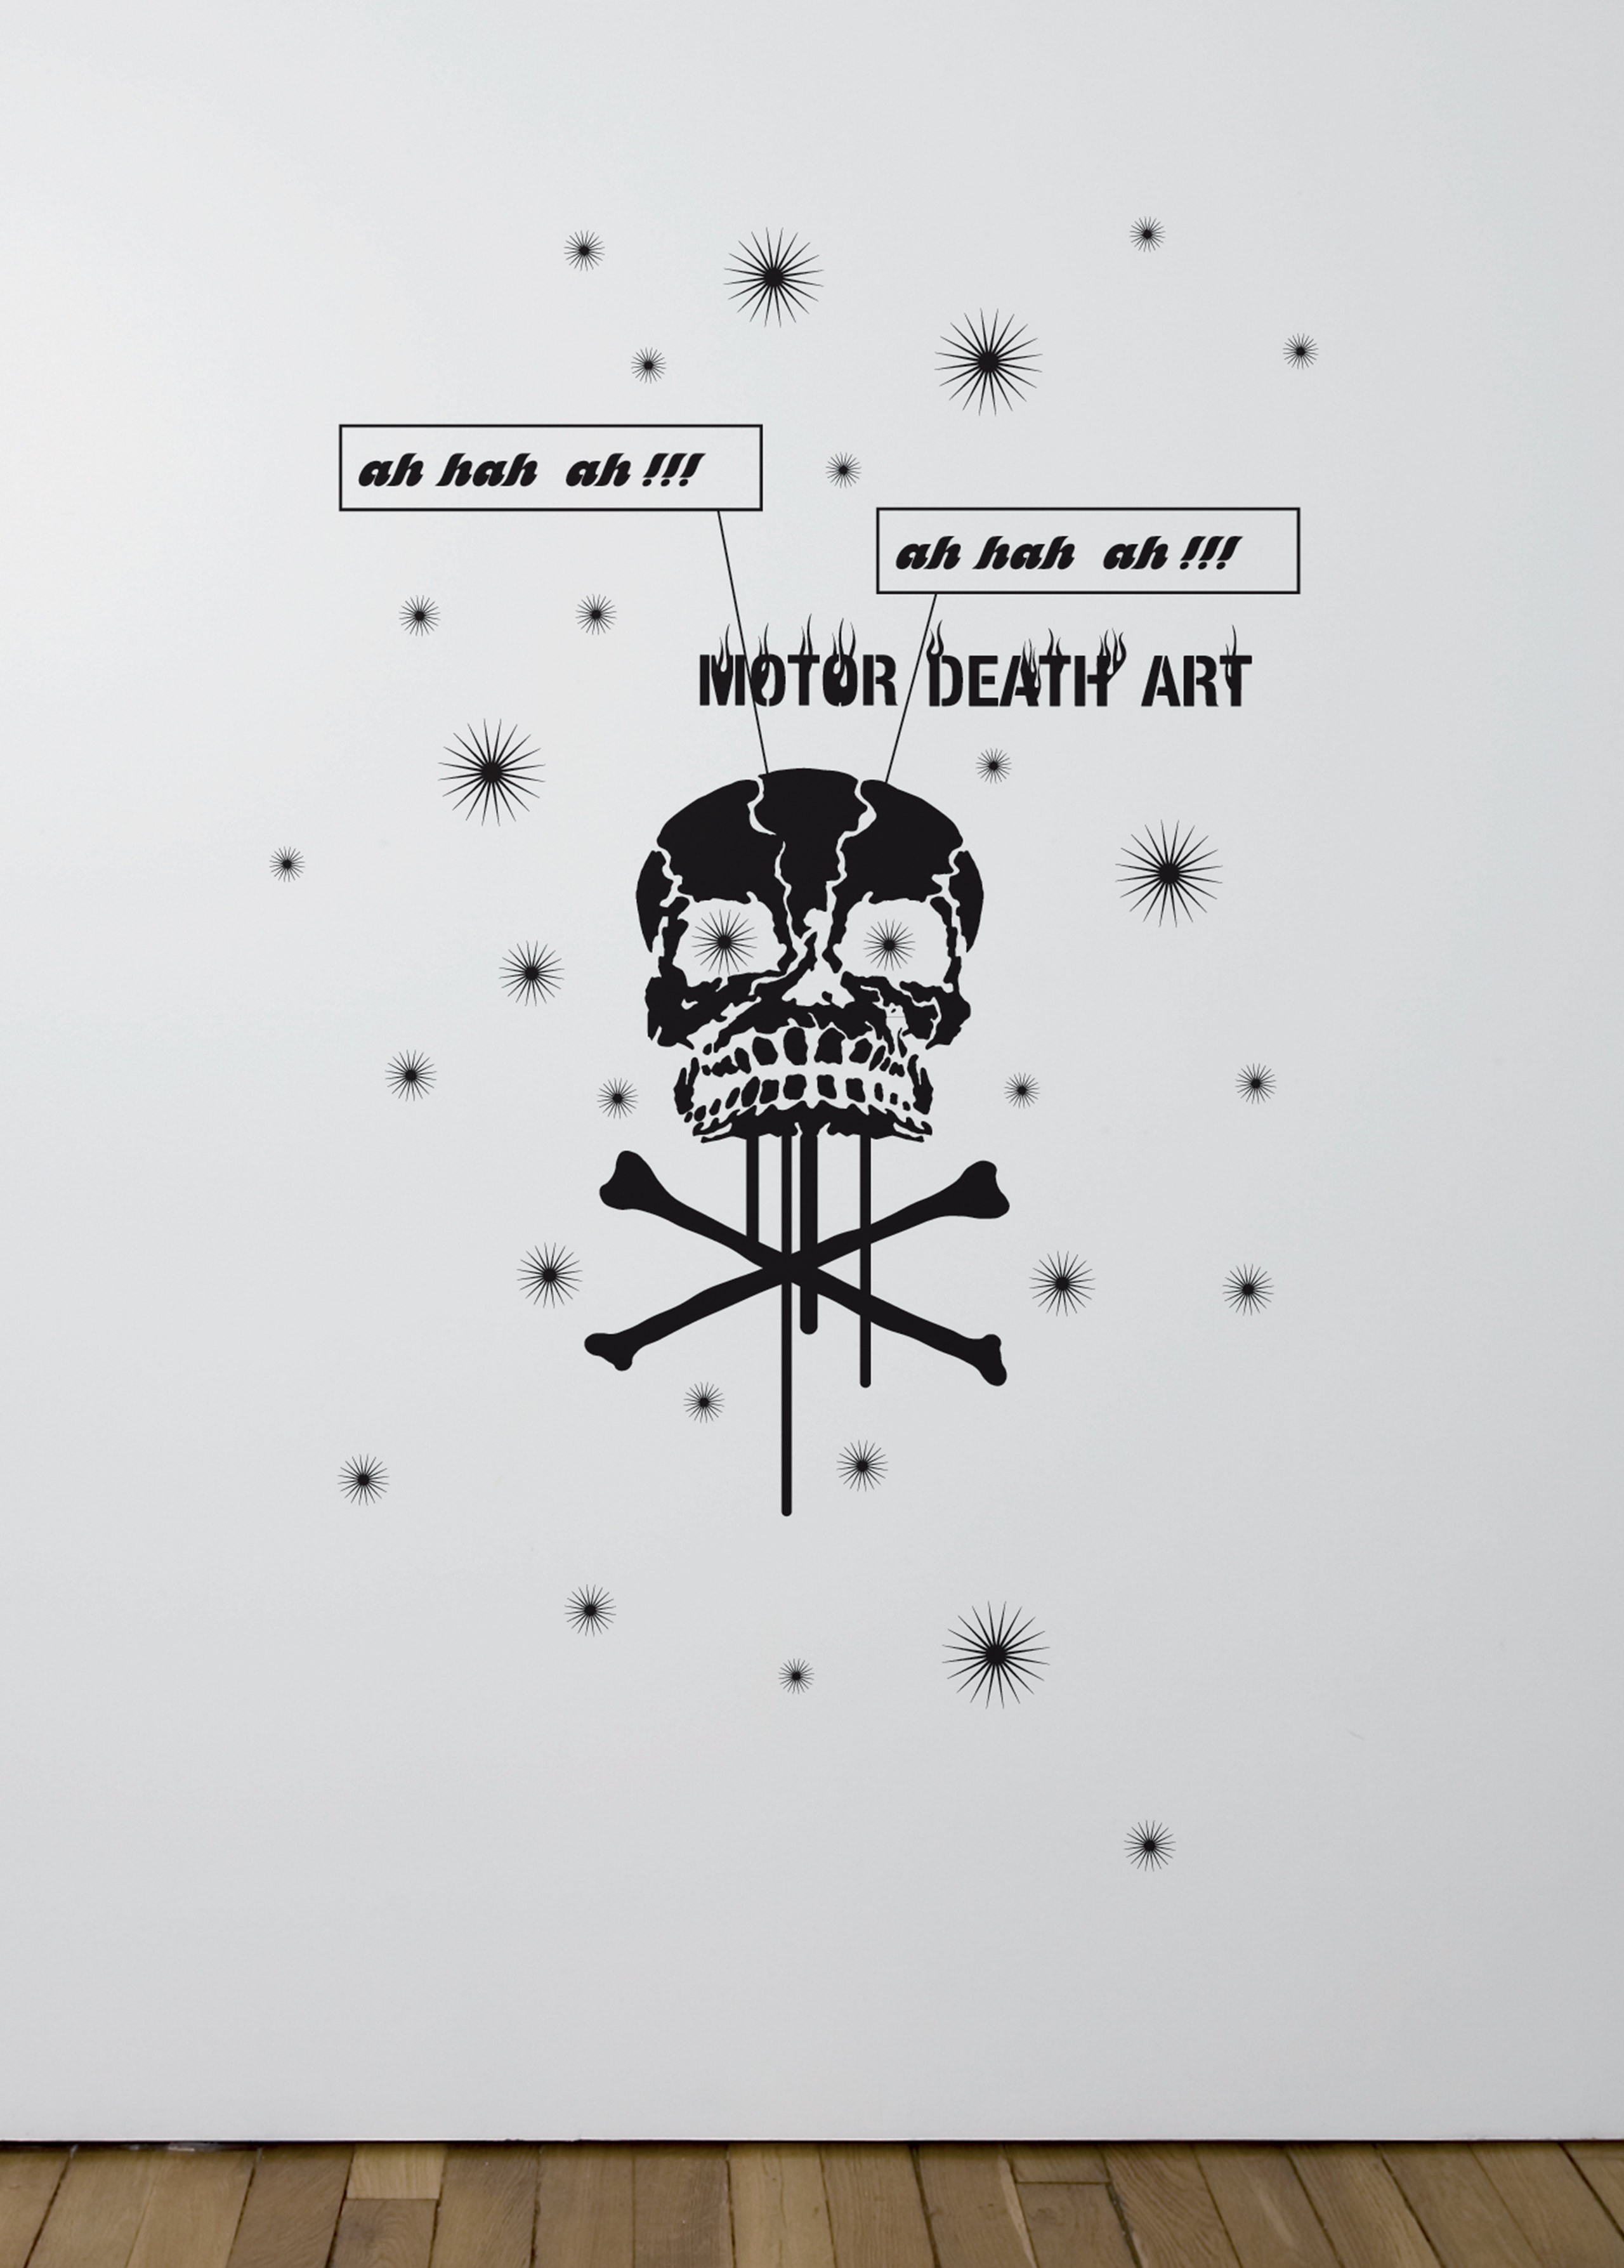 Motors death art